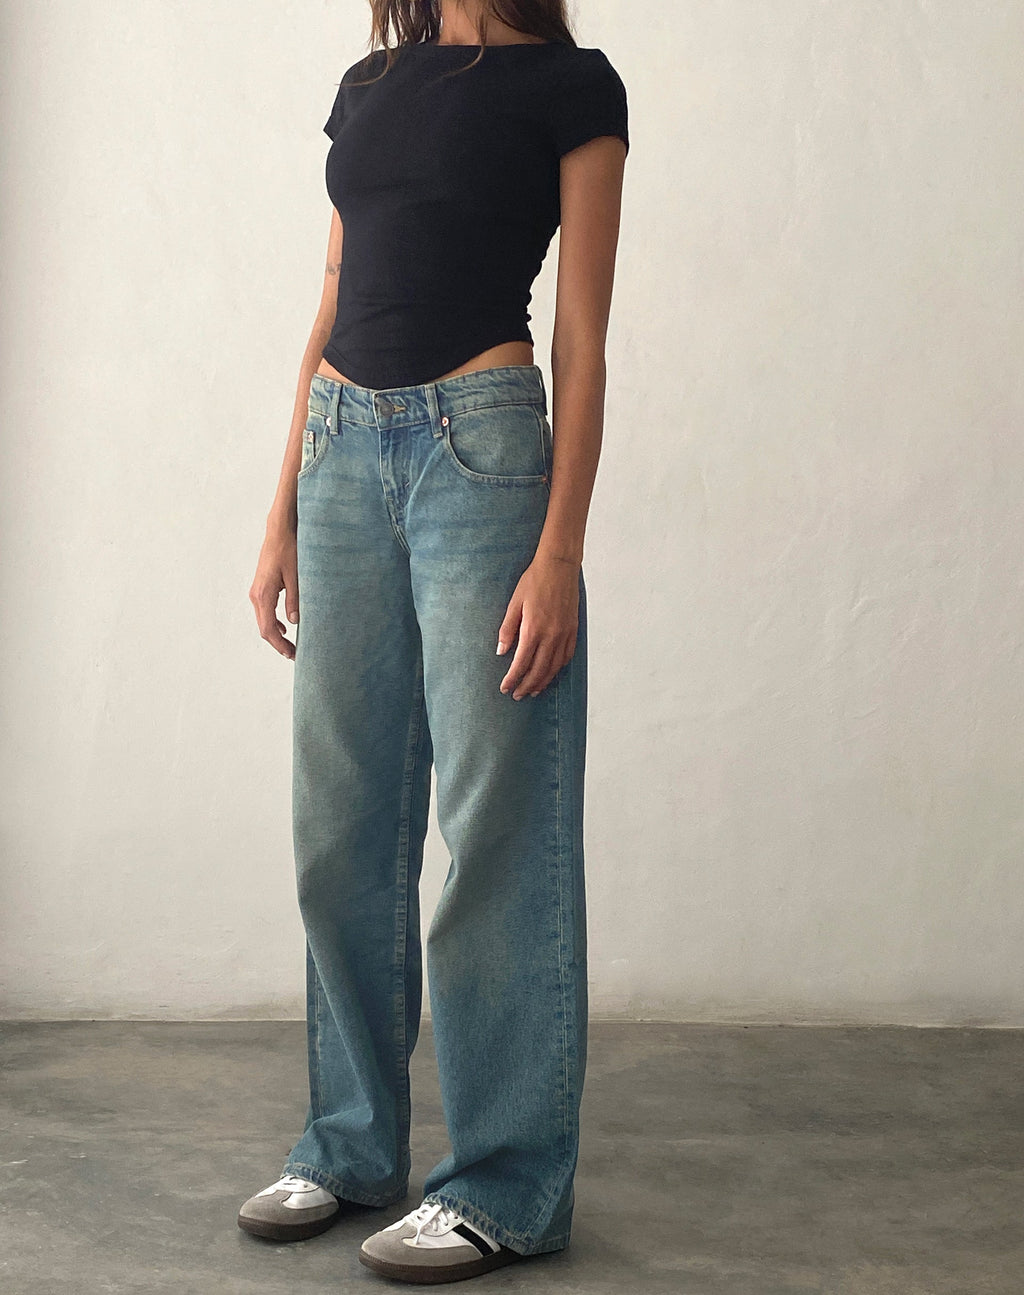 Low Rise Parallel Jeans in Vintage Blau Grün